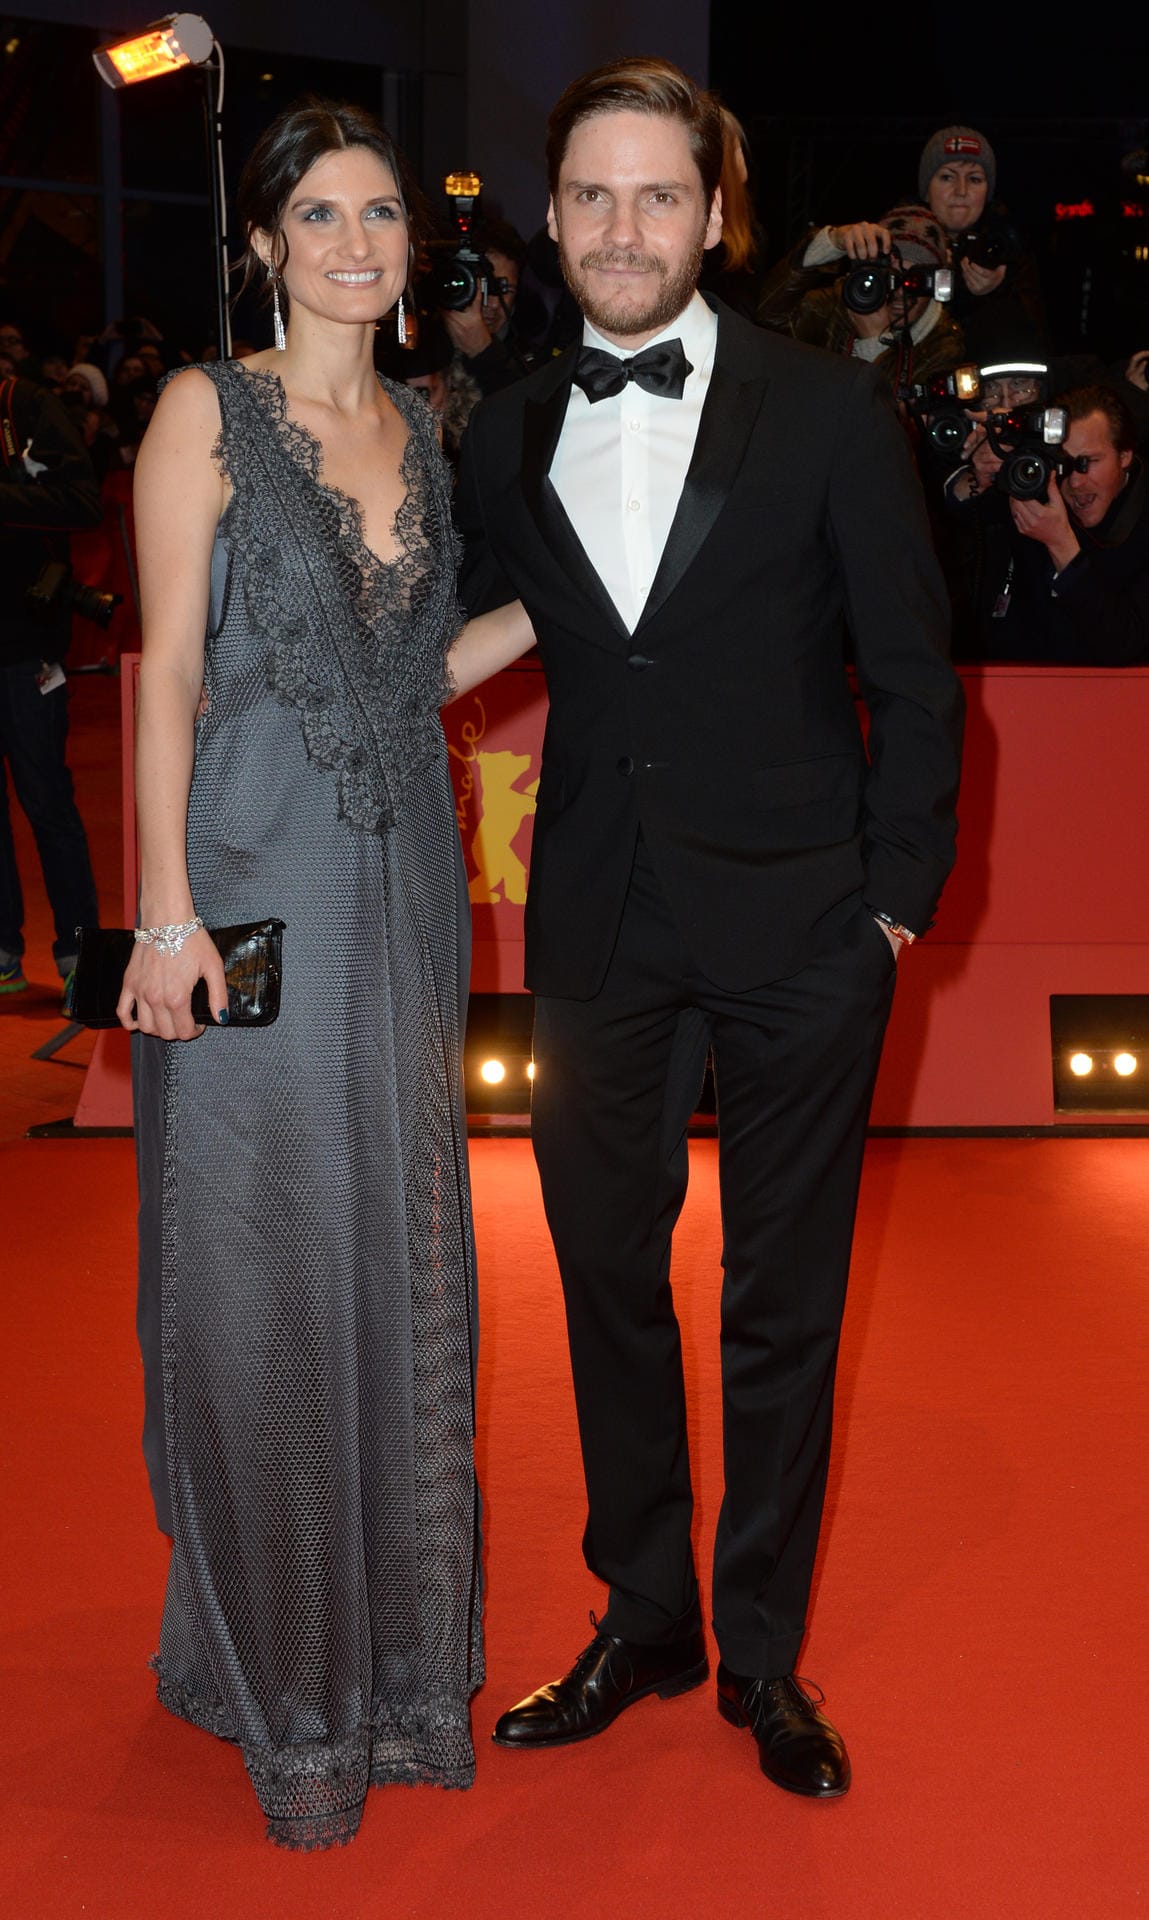 Schauspieler Daniel Brühl kam gemeinsam mit seiner Lebensgefährtin Felicitas Rombold.